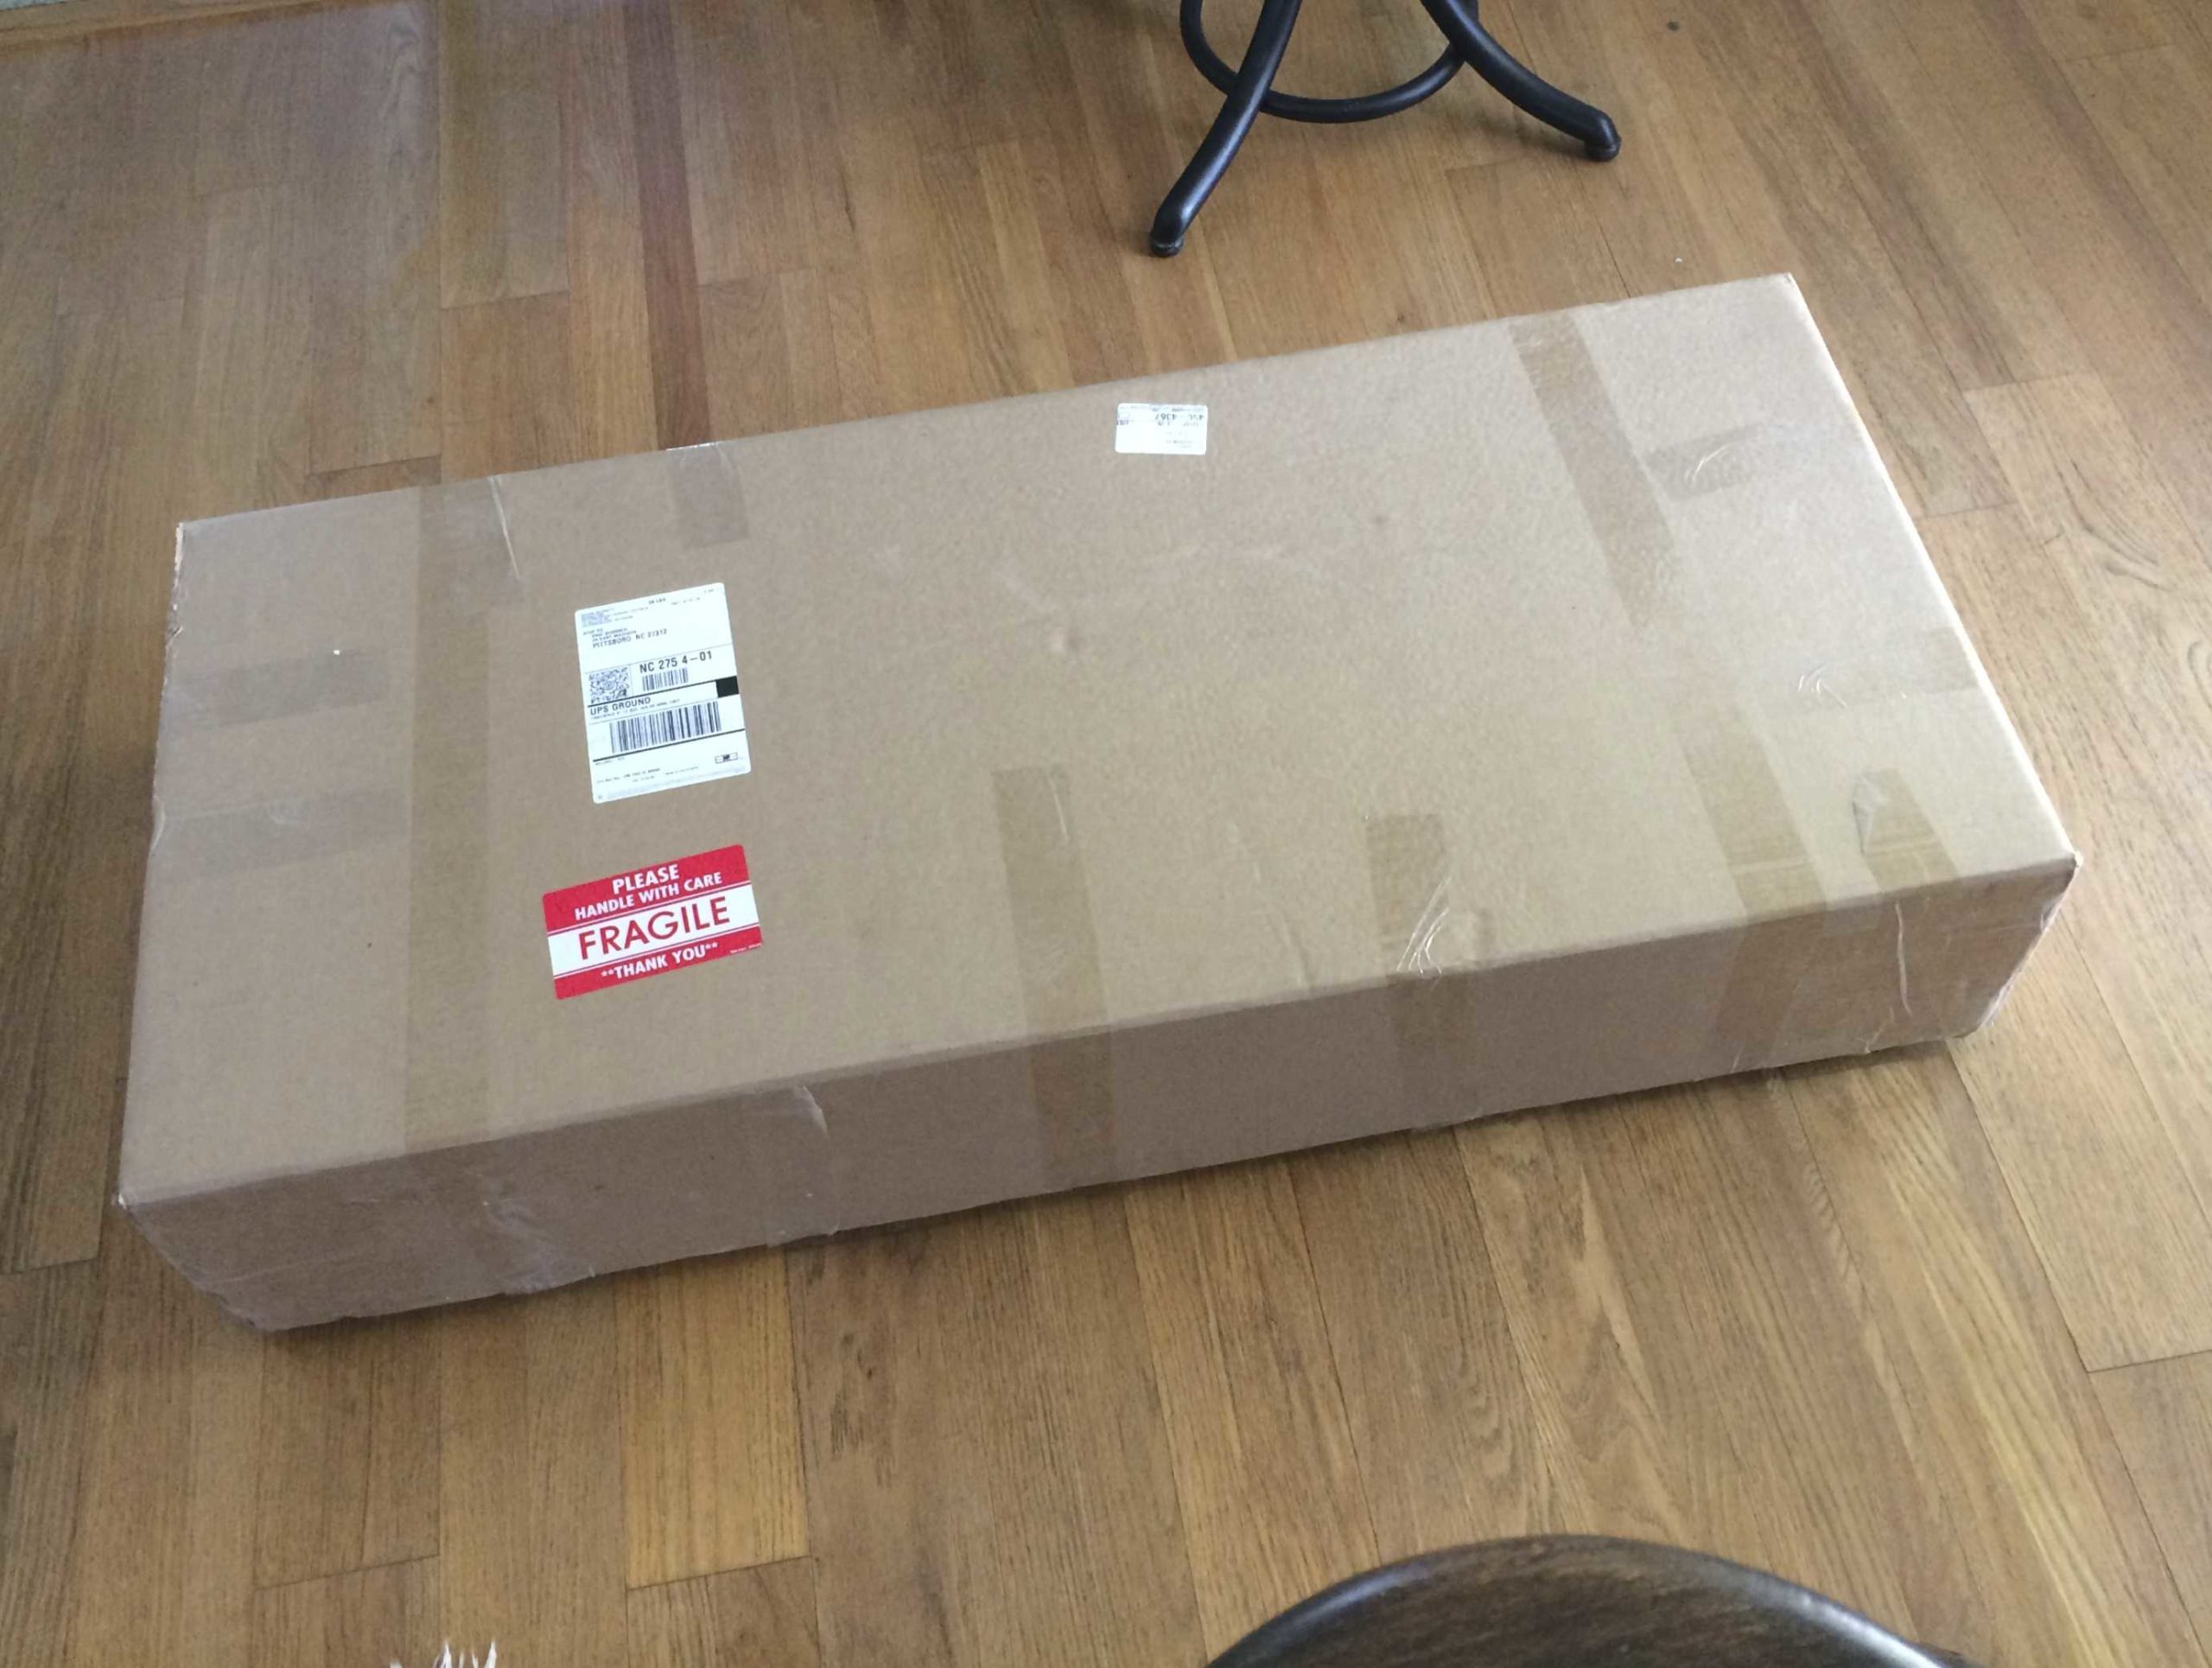 box arrives